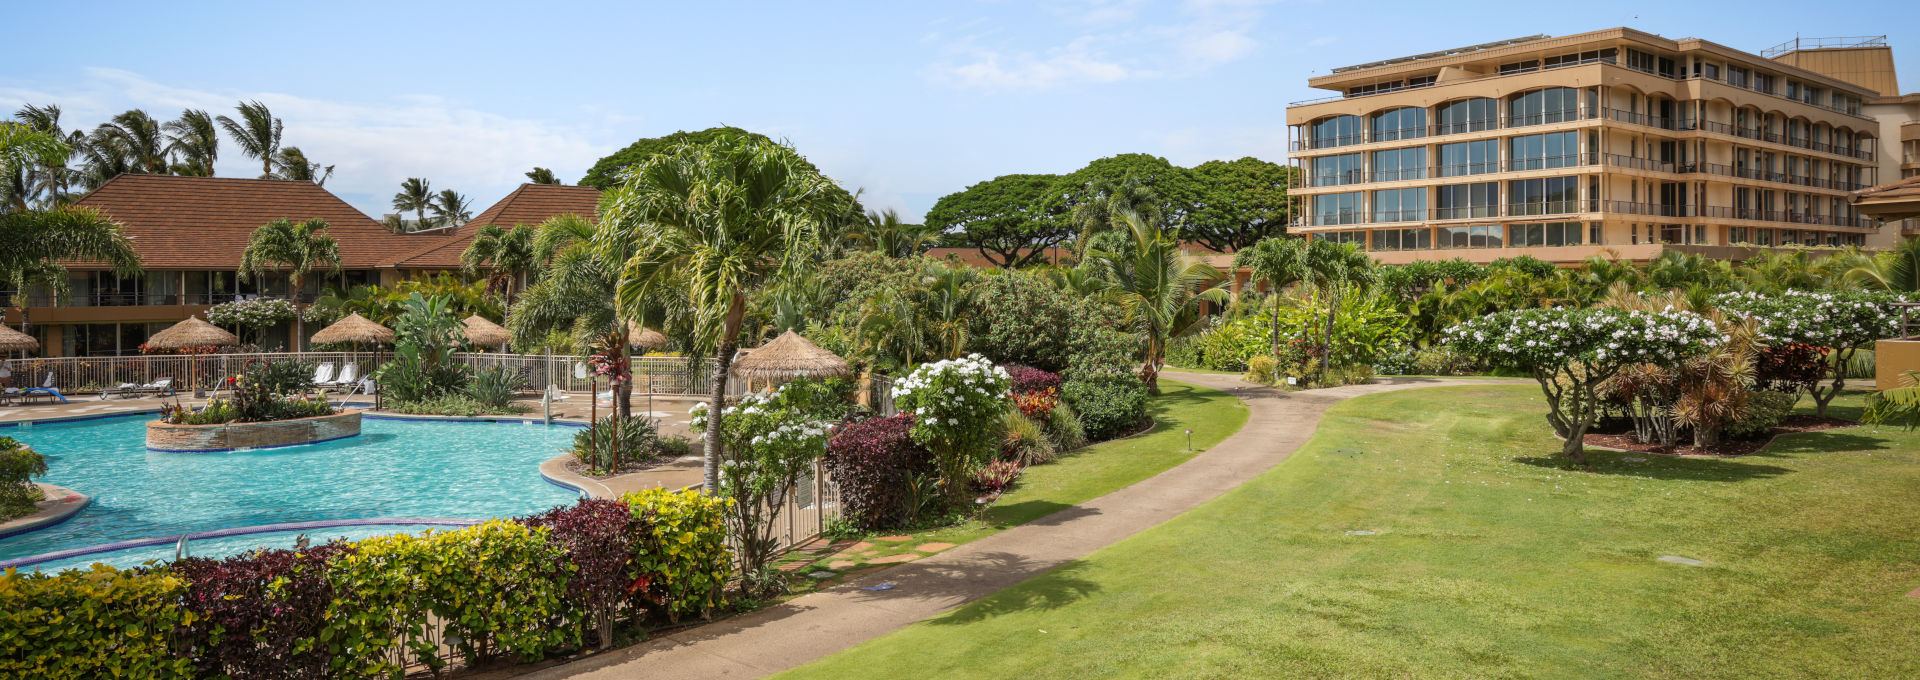 Maui Kaanapali Villas pool area and gardens